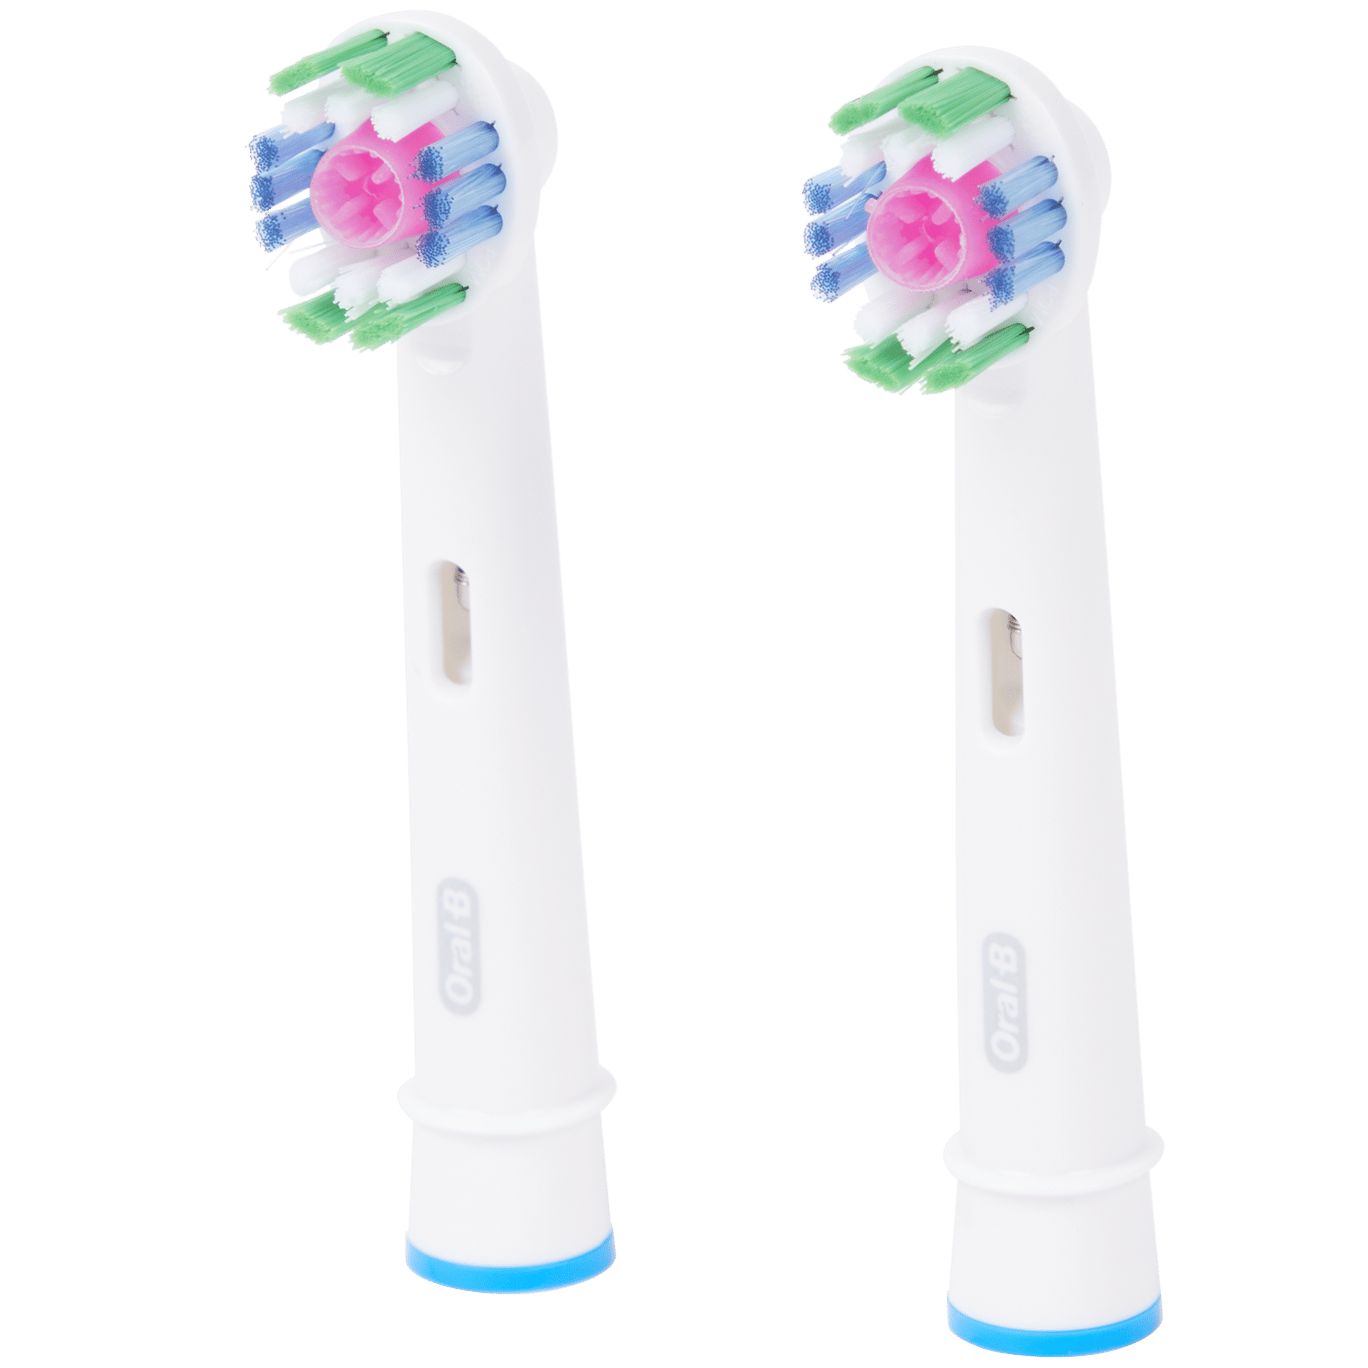 Cabezales de cepillo de dientes Oral-B 3D White